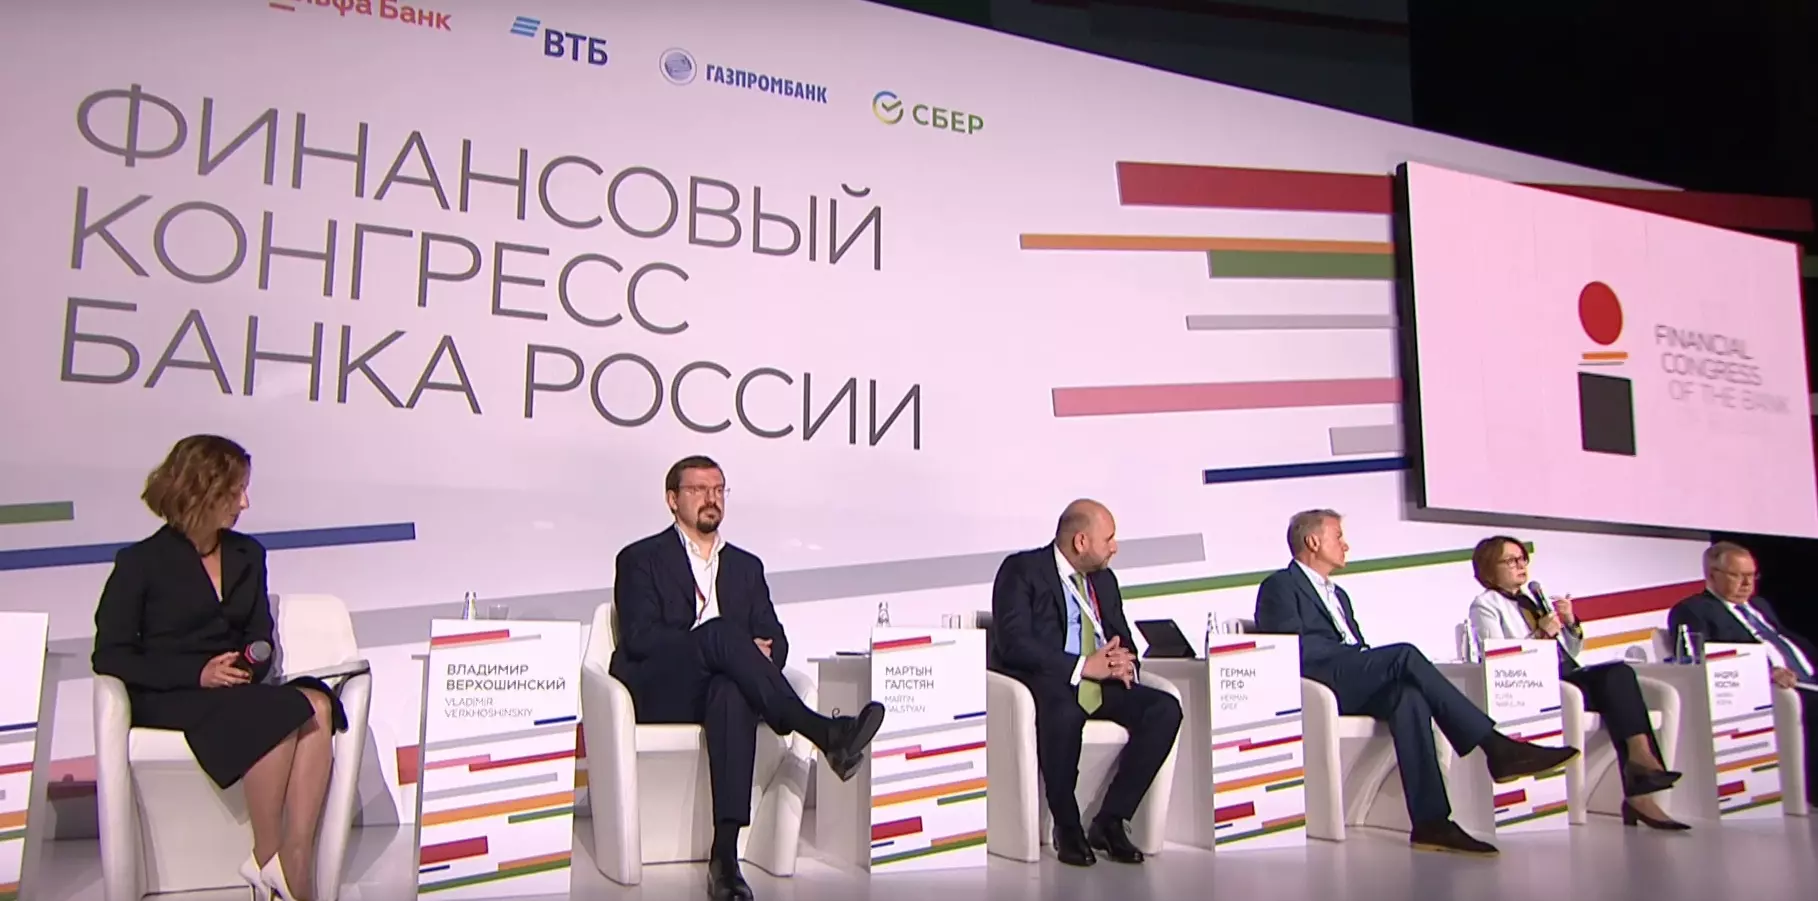 На Финансовом конгрессе представили программу новой финансовой системы без SWIFT и обсудили цифровой рубль